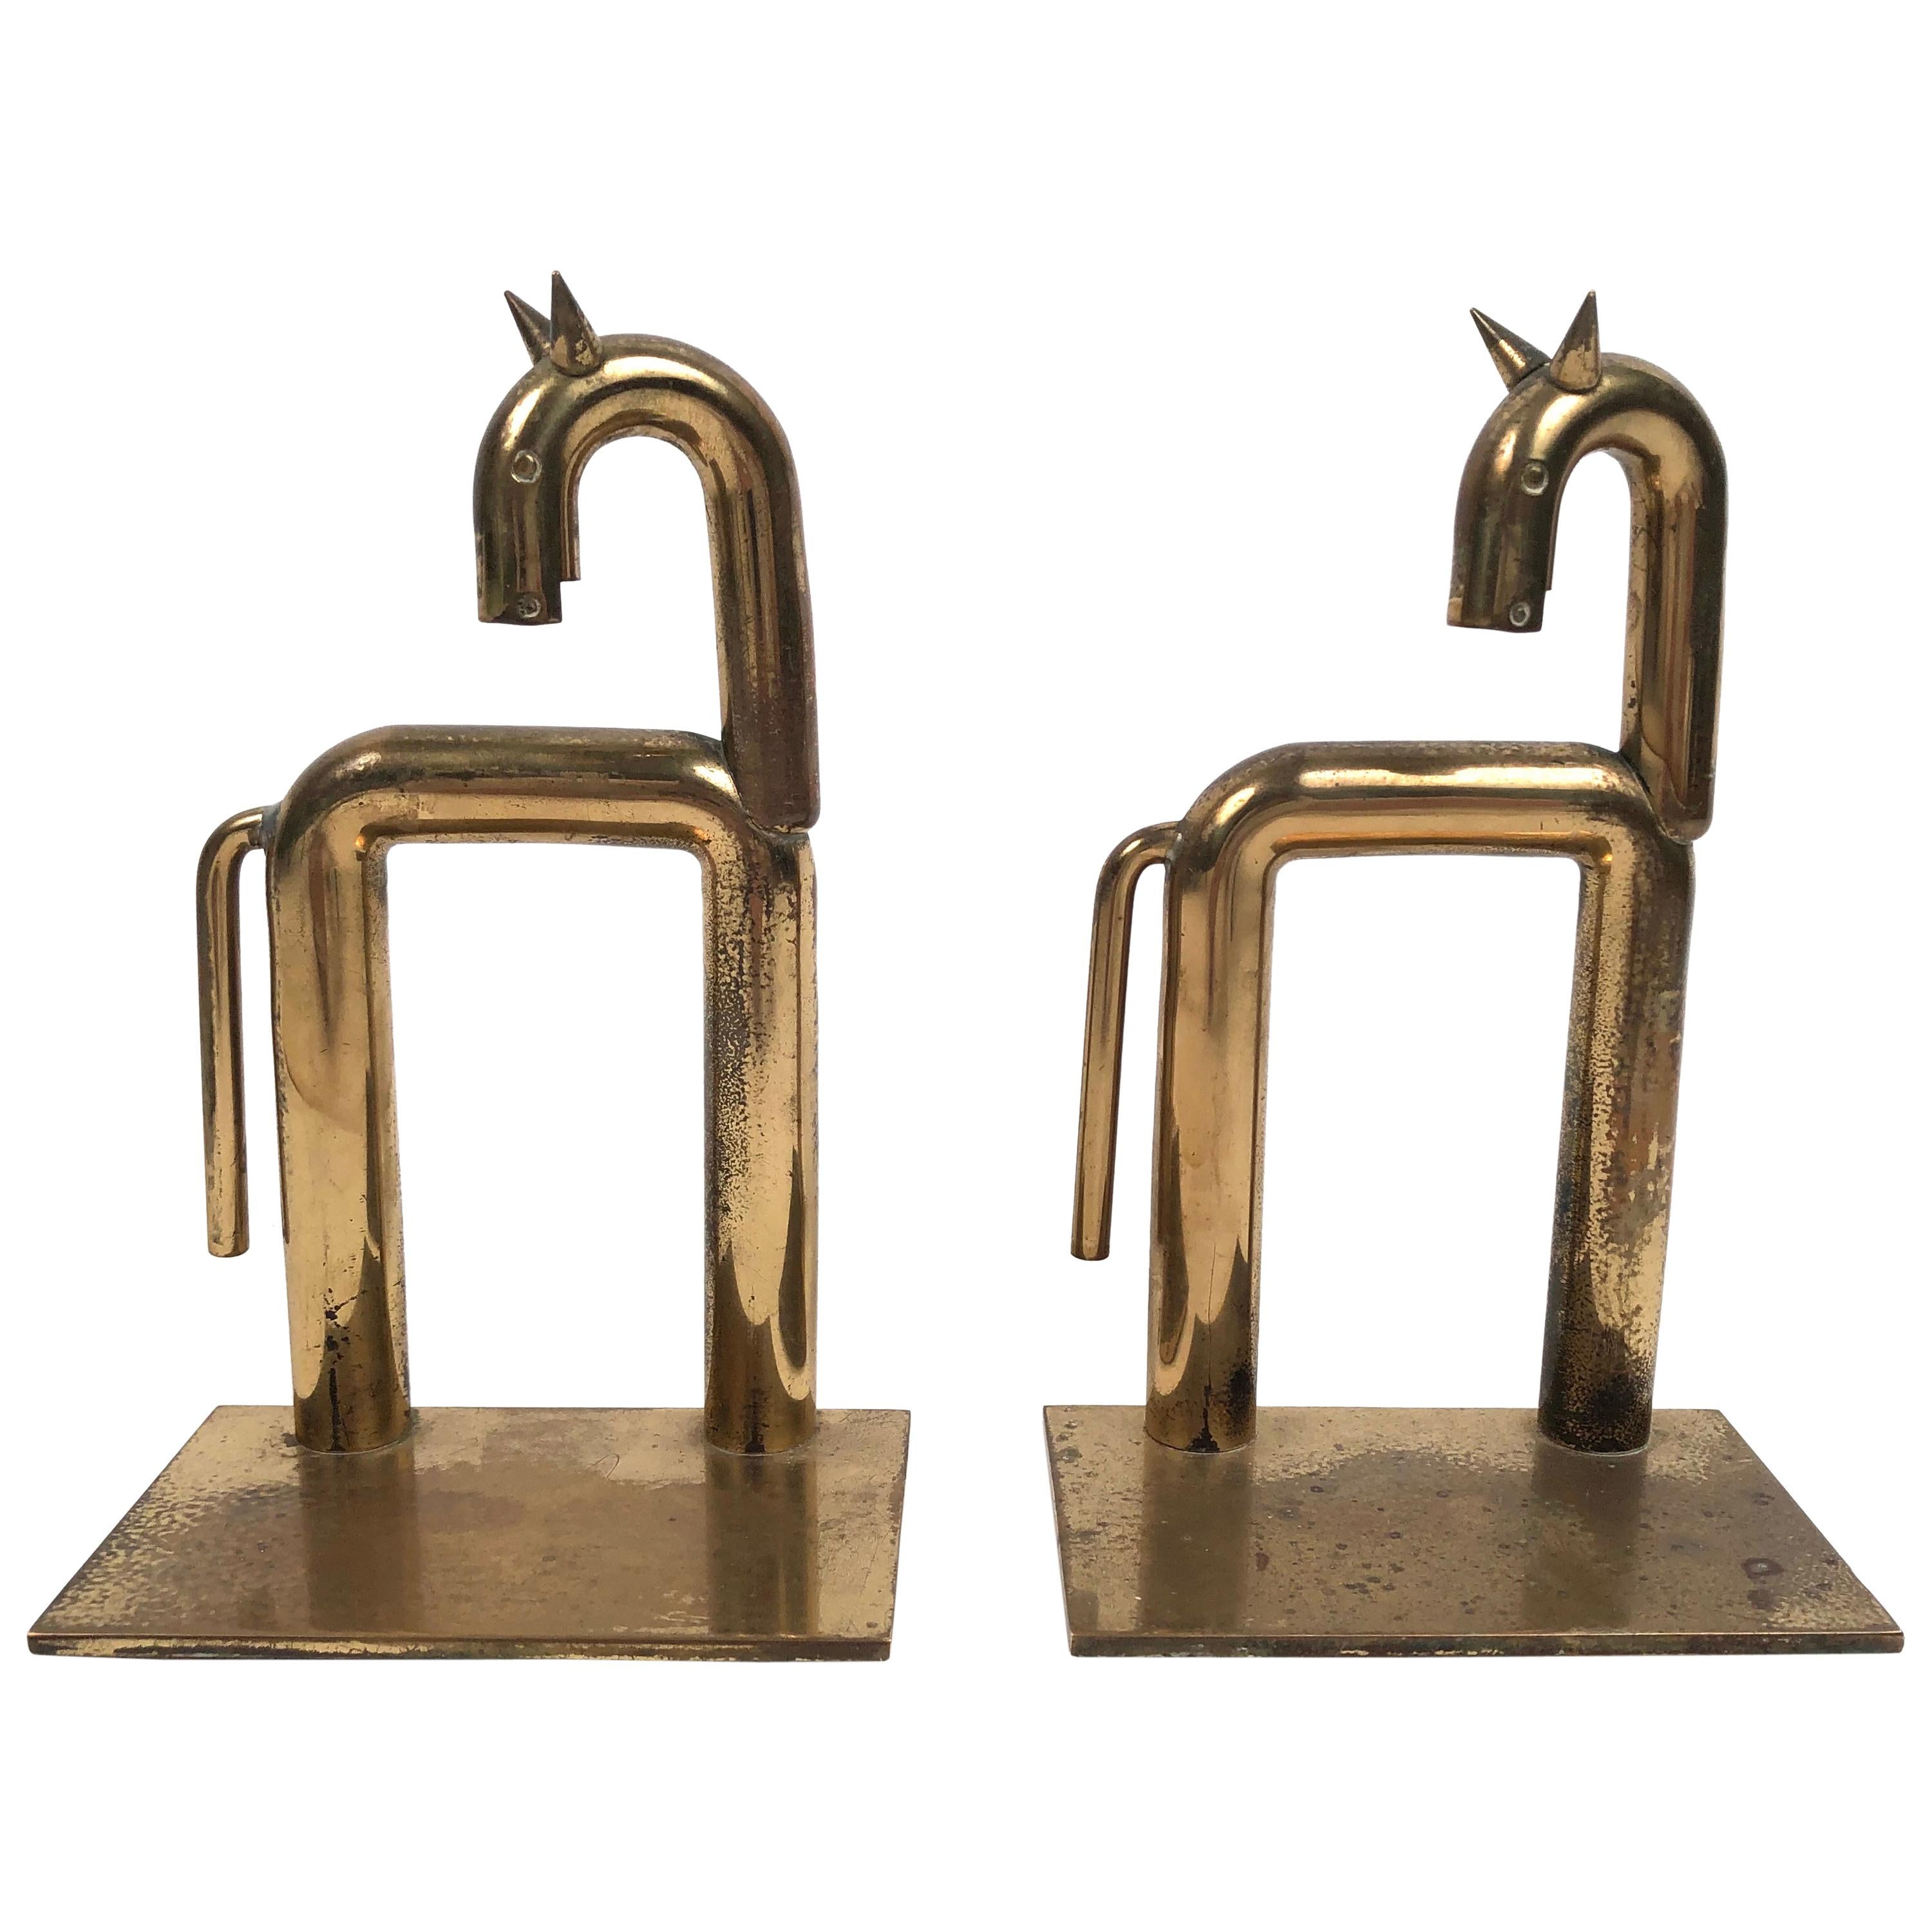 Pair of Brass Modernist Horse Bookends Designed By Walter von Nessen, circa 1931